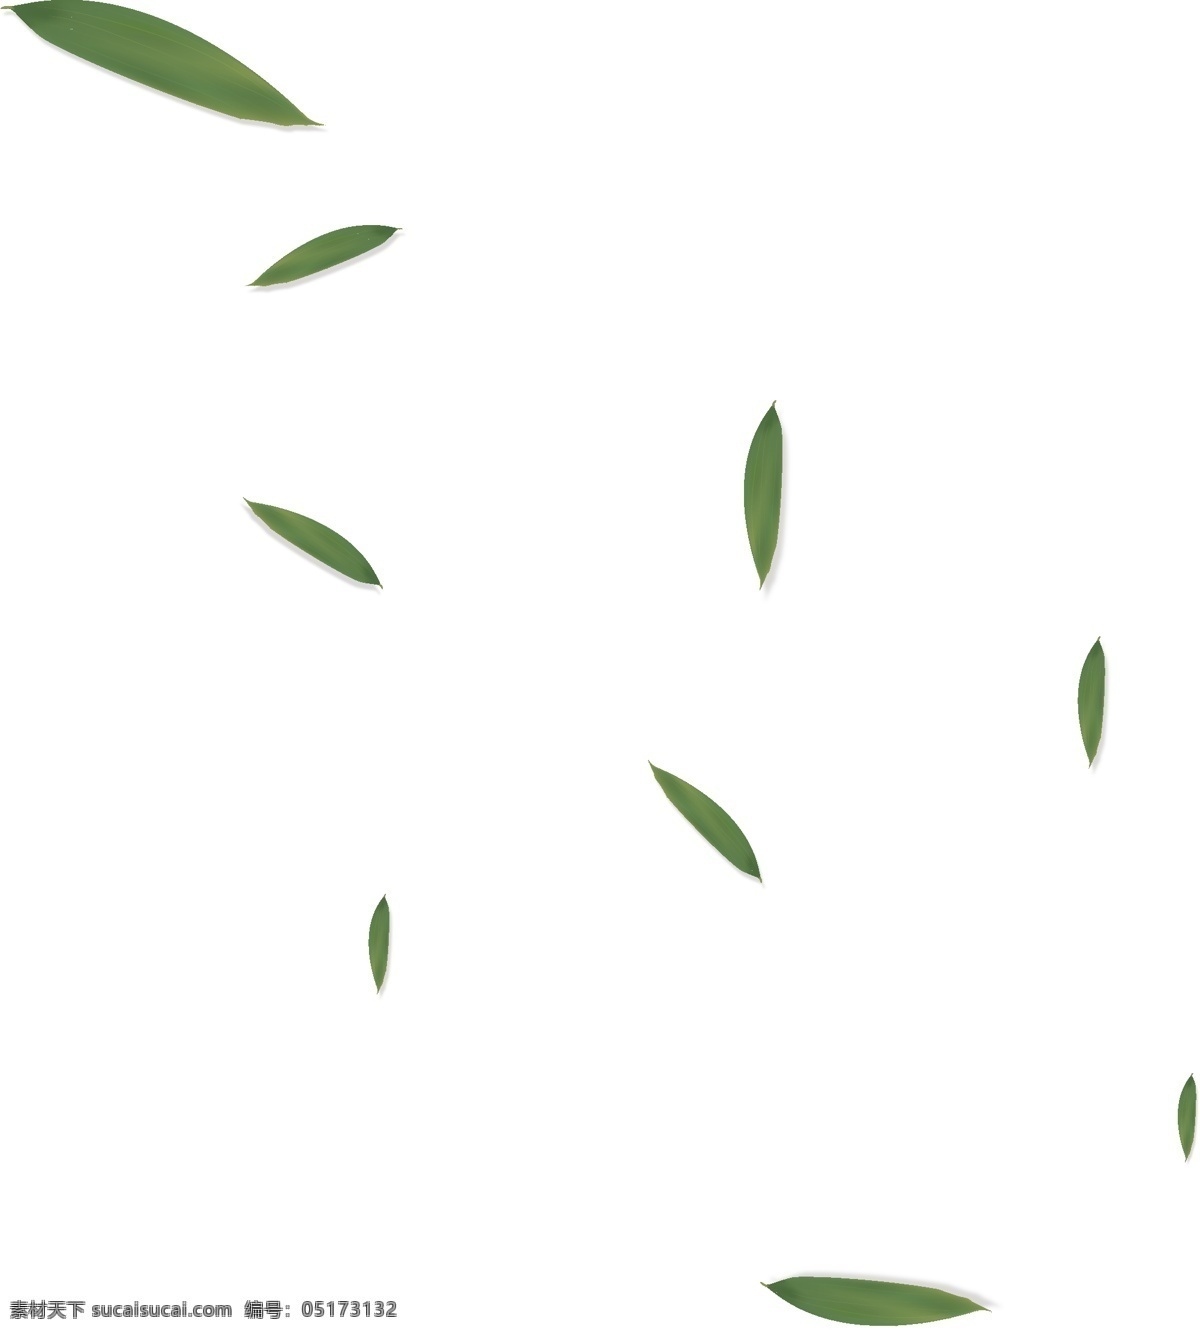 手绘 端午节 漂浮 粽叶 手绘粽叶 漂浮粽叶 叶子 绿色 植物 五月初五 浓情端午 绿色粽叶